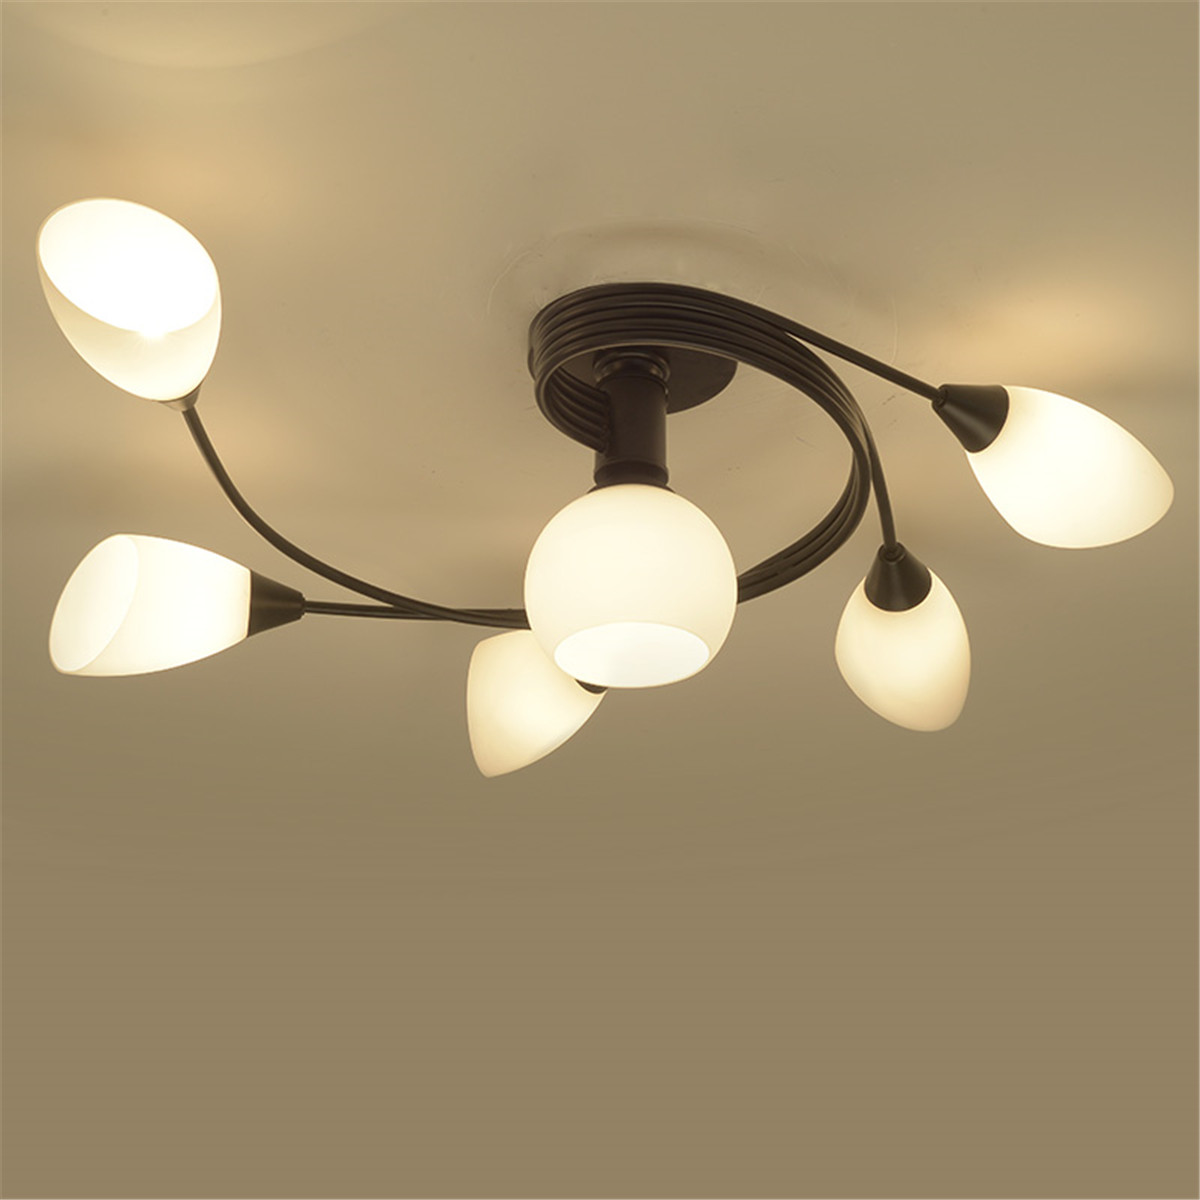 Modern-Ceiling-Light-Home-Bedroom-Pendant-Chandeliers-Lamp-Lighting-Fixture-1604532-4